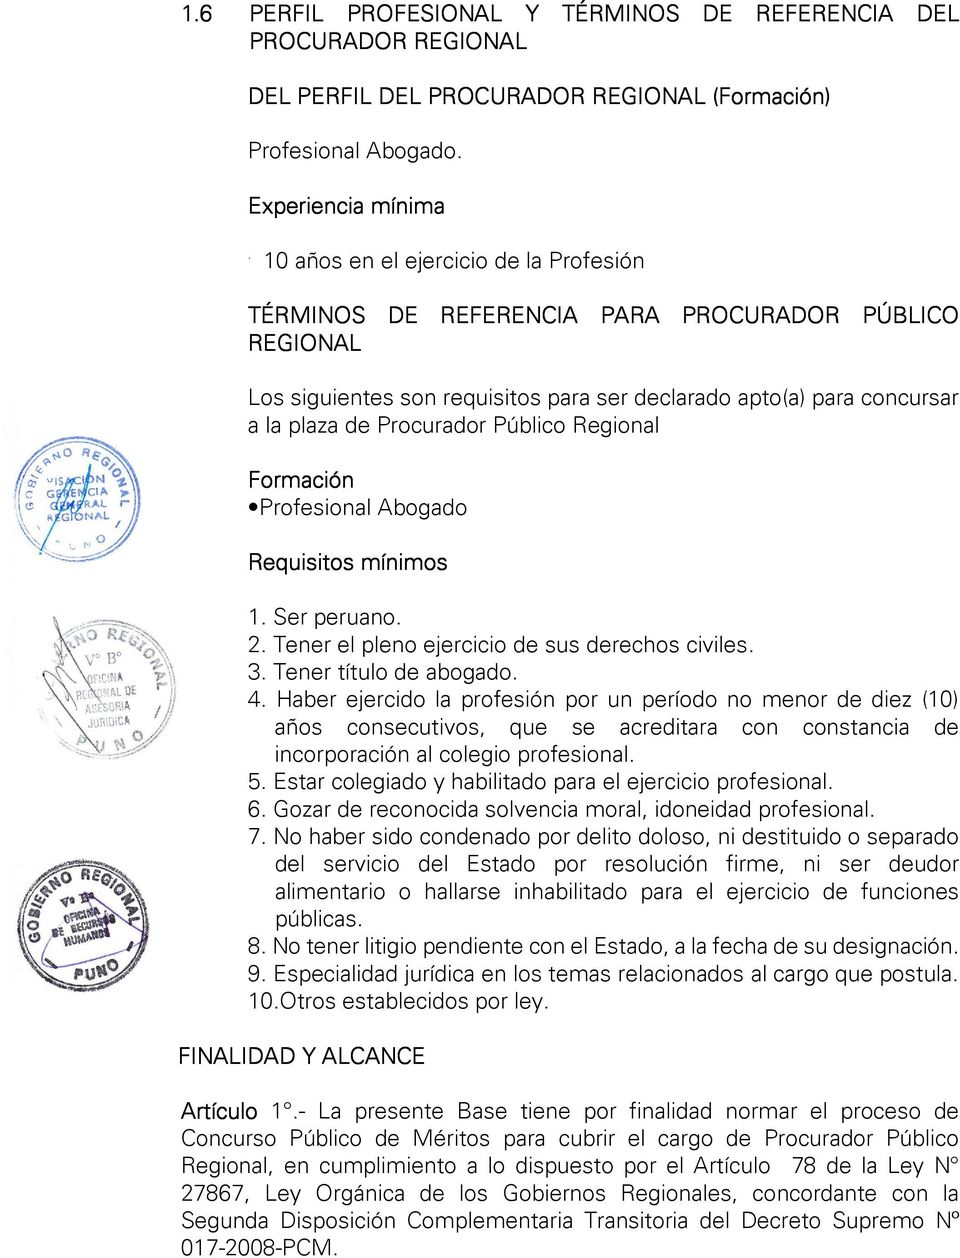 Público Regional Formación Profesional Abogado Requisitos mínimos 1. Ser peruano. 2. Tener el pleno ejercicio de sus derechos civiles. 3. Tener título de abogado. 4.